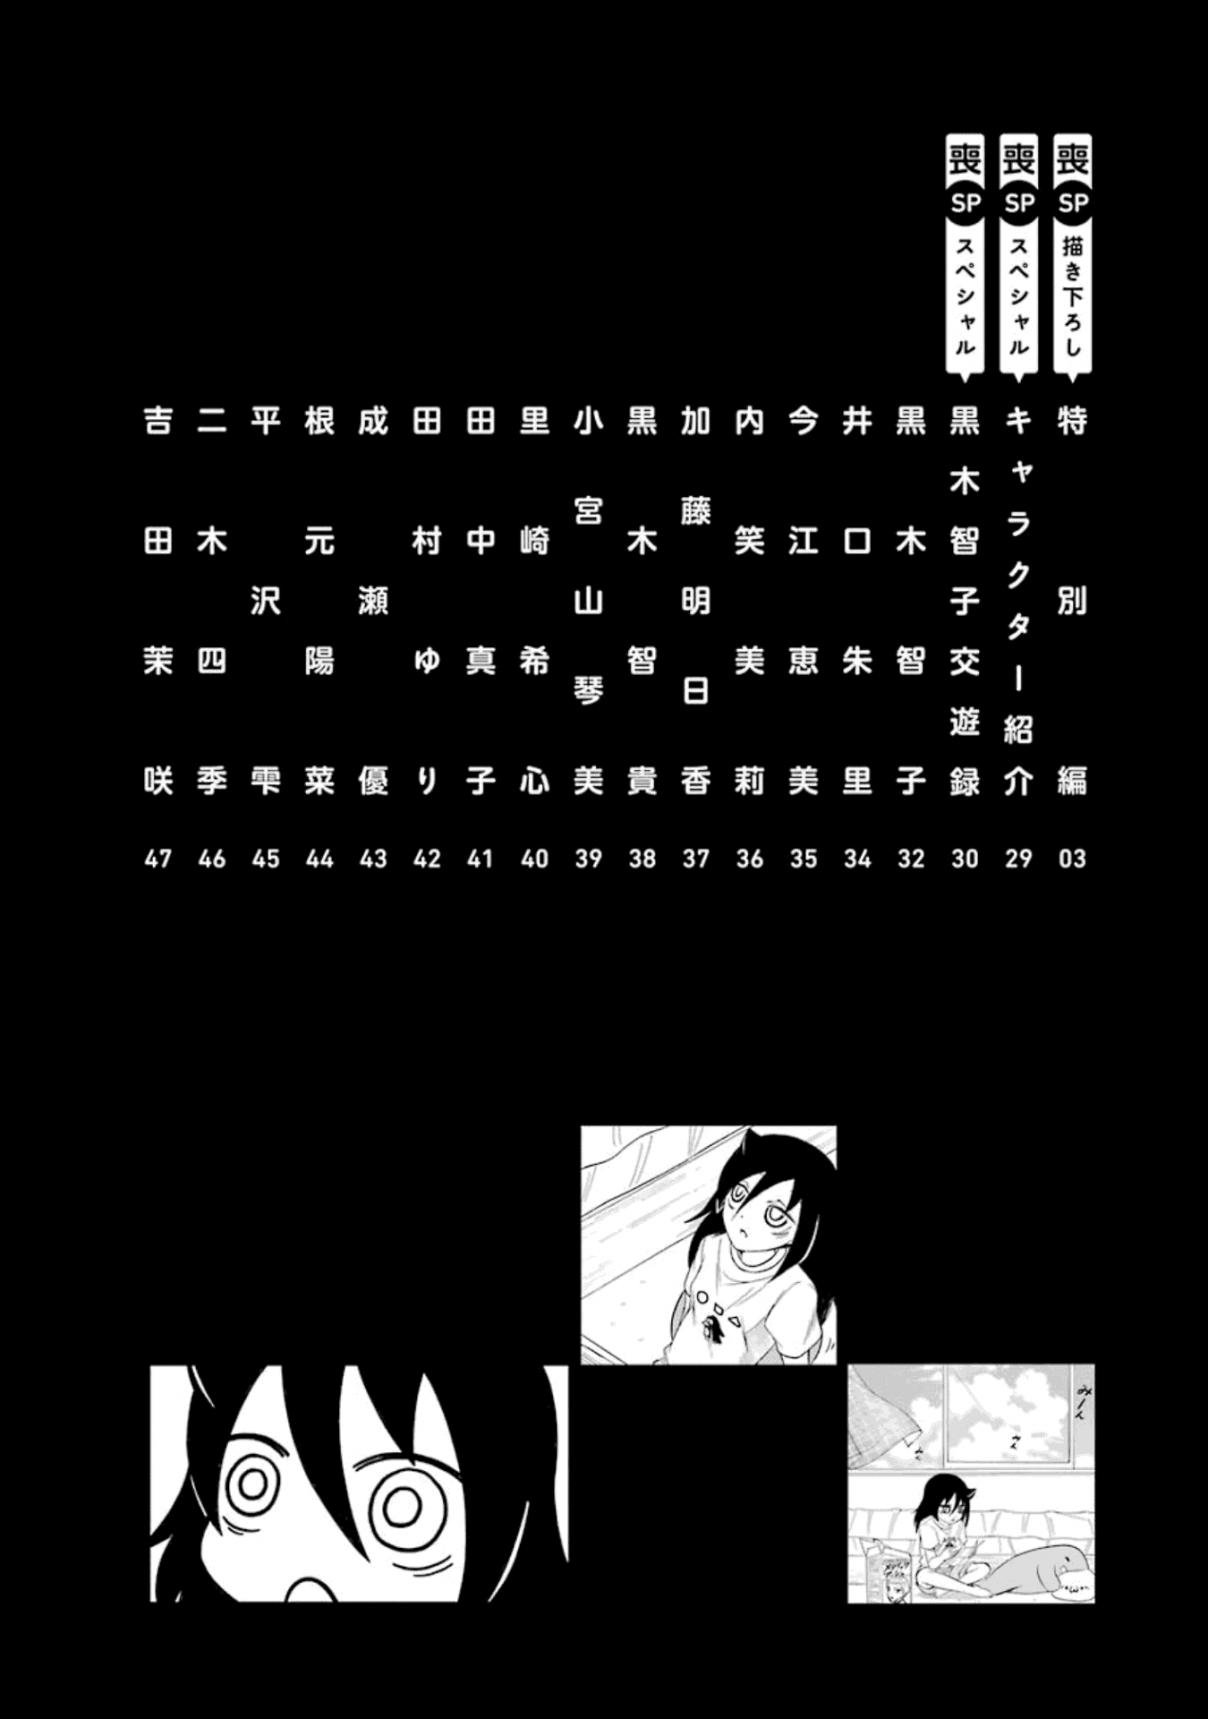 Watashi ga Motenai no wa Dou Kangaetemo Omaera ga Warui! Vol. 18 Ch. 176.5 Volume 18 Special Edition Booklet